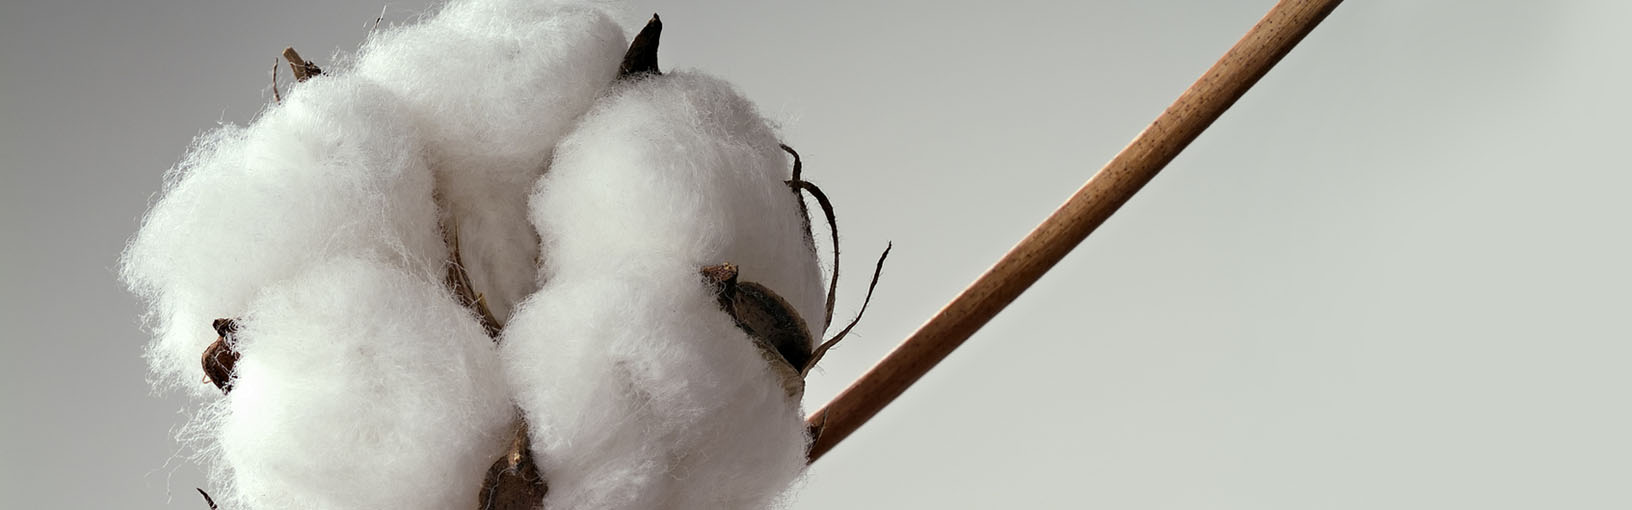 Высококачественная пряжа для вязки и свойлачивание Пряжа Lana Grossa | Нитки для вязания крючком